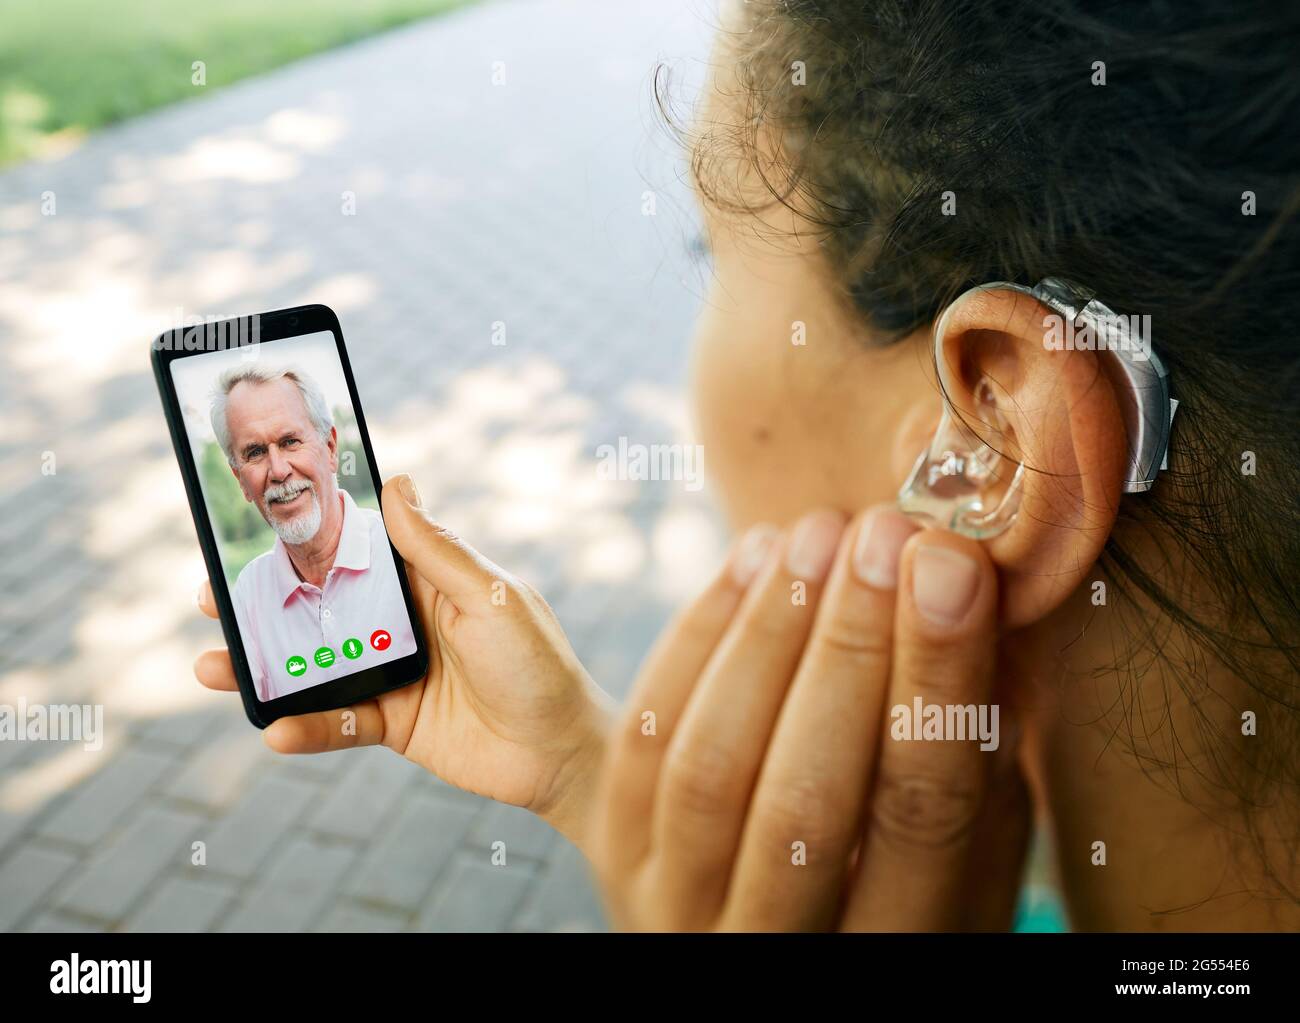 Une femme adulte avec une prothèse auditive dans son oreille communique avec son père par communication vidéo via un smartphone. Une vie humaine complète avec des prothèses auditives Banque D'Images